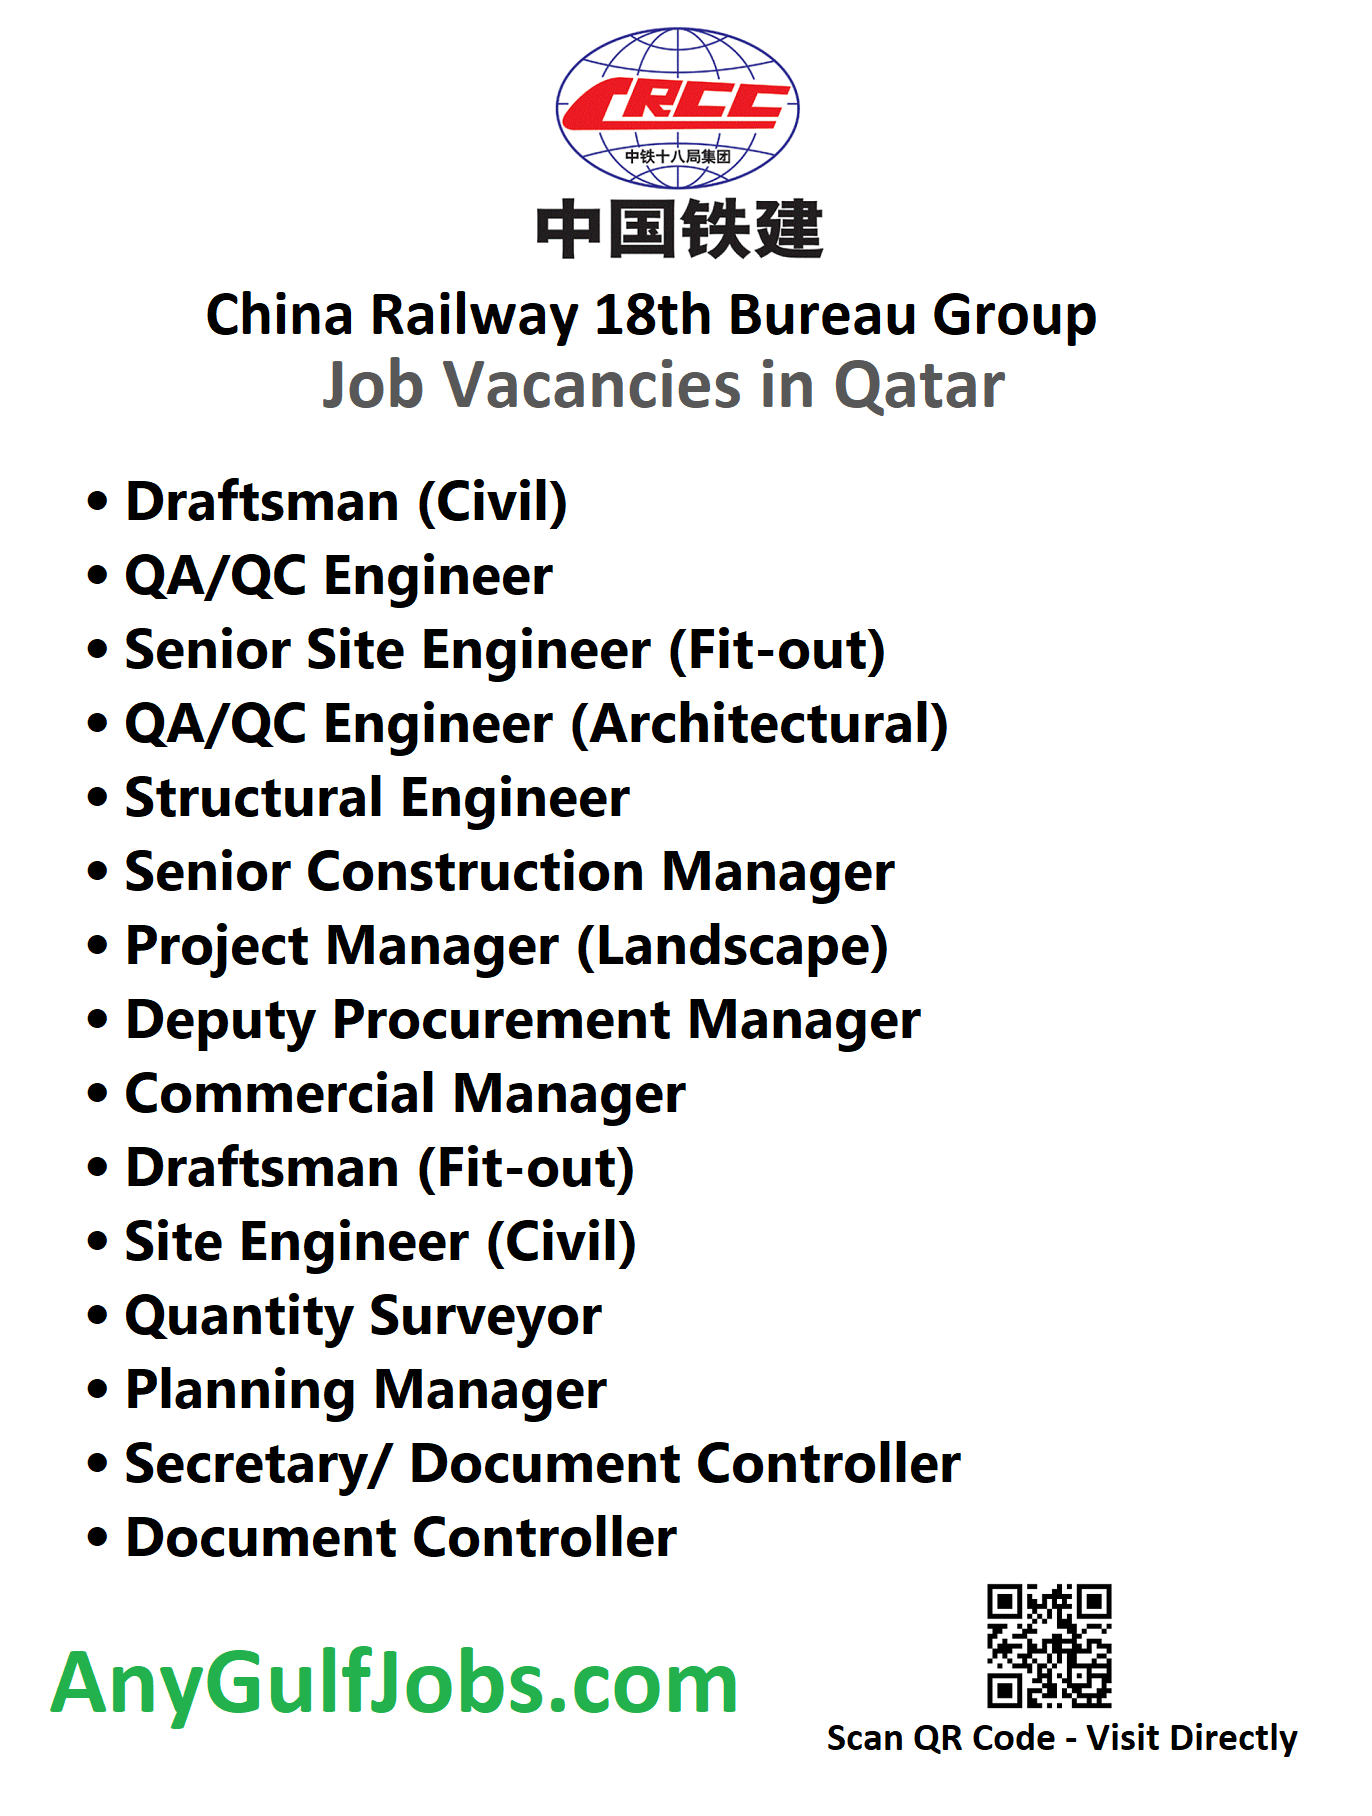 China Railway 18th Bureau Group Job Vacancies in Qatar